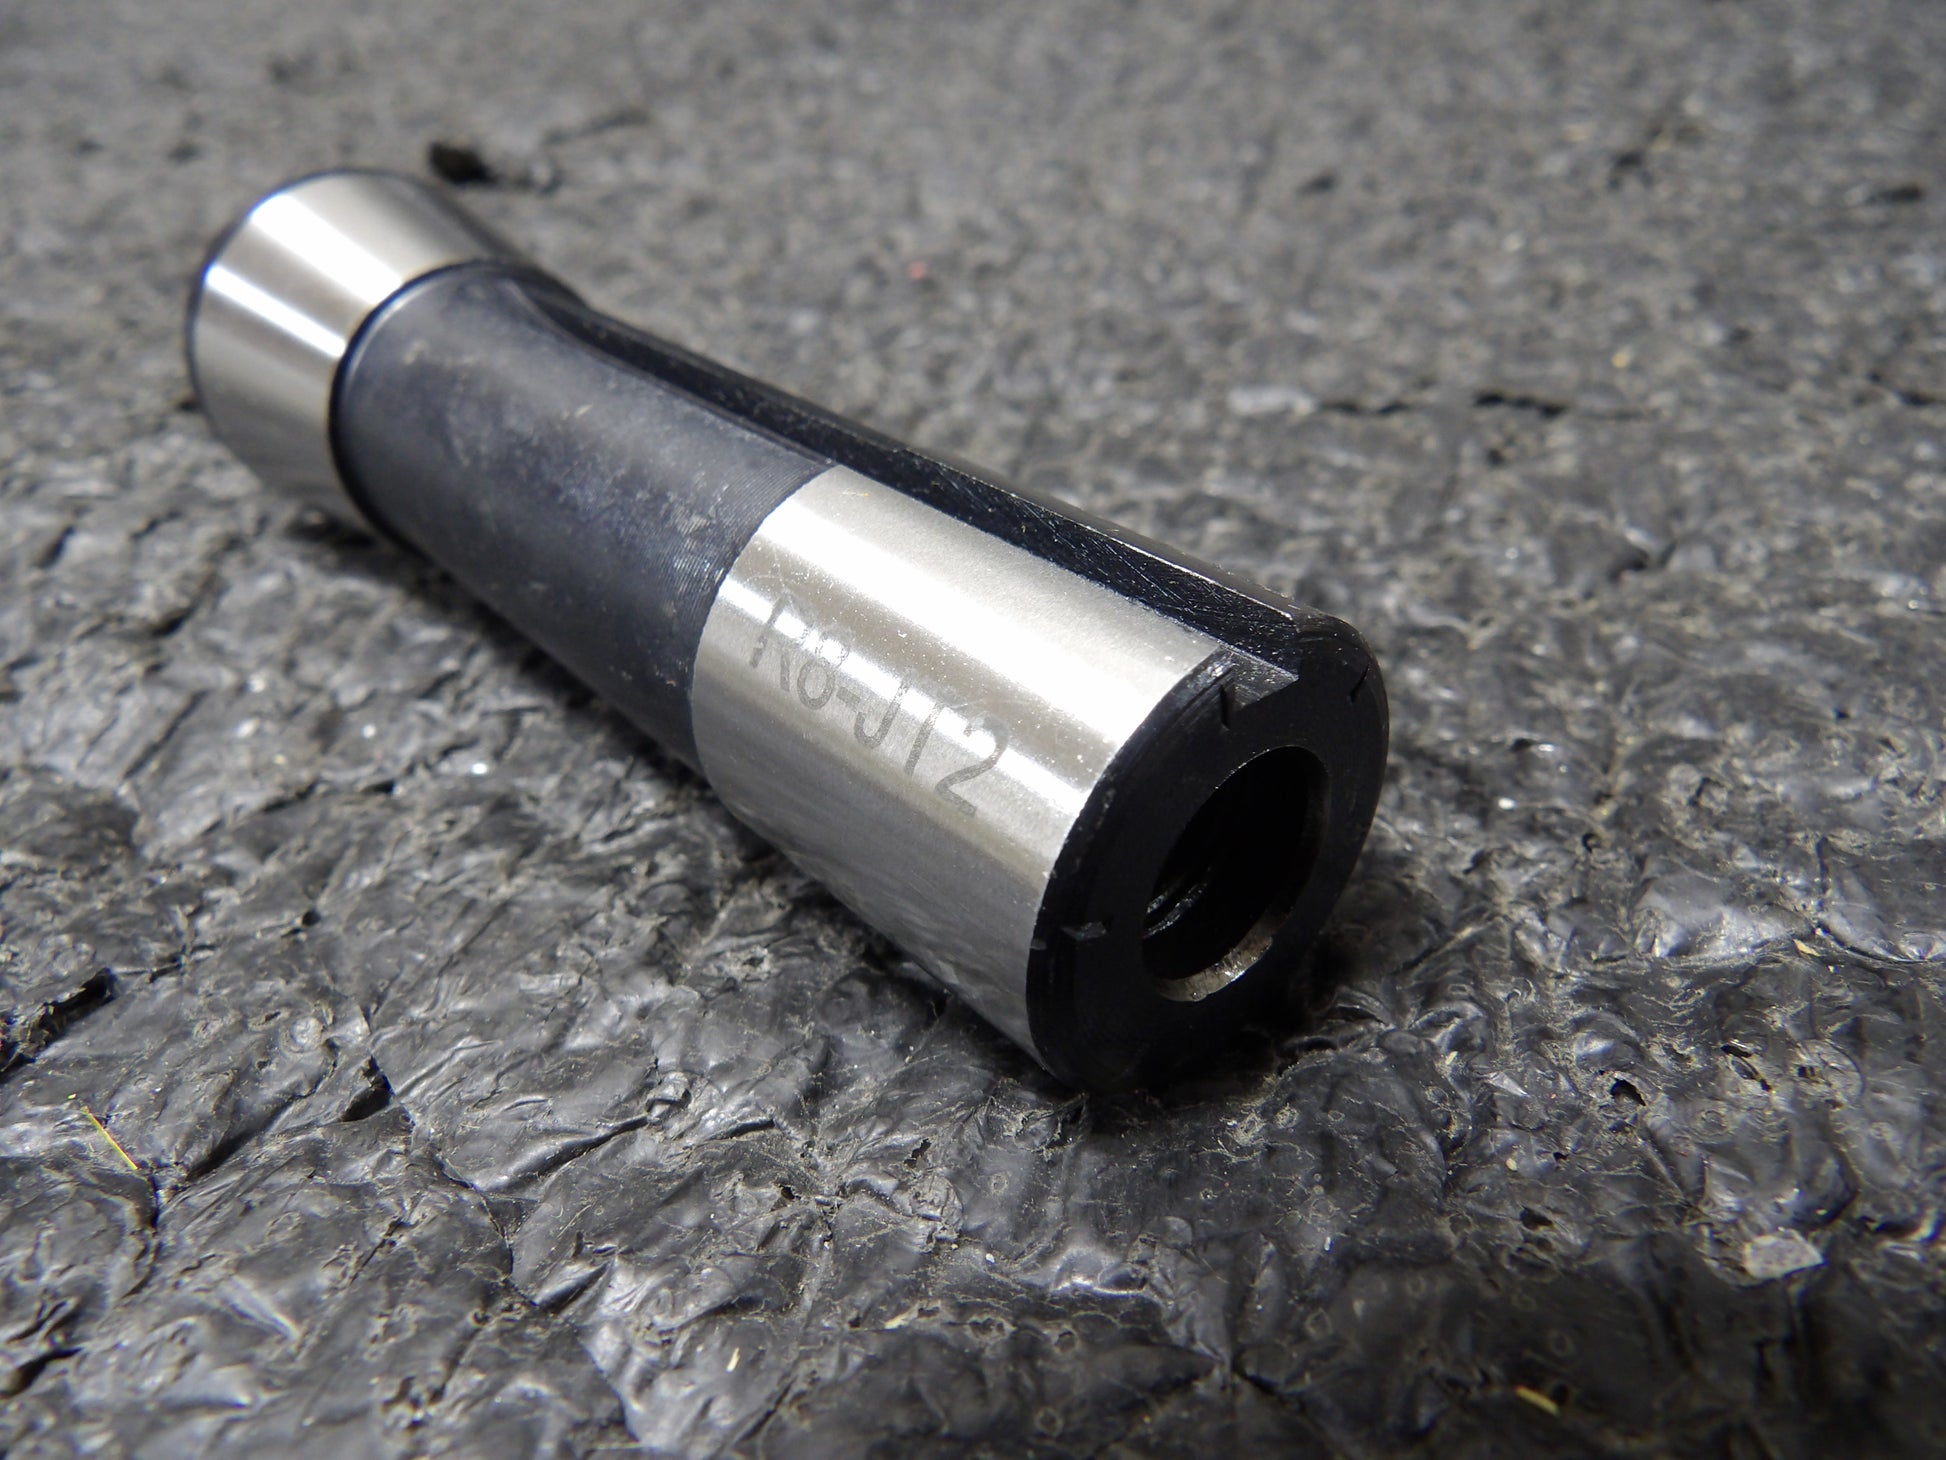 Keyed Drill Chuck 1/2 inch (13mm) - JT2 Taper